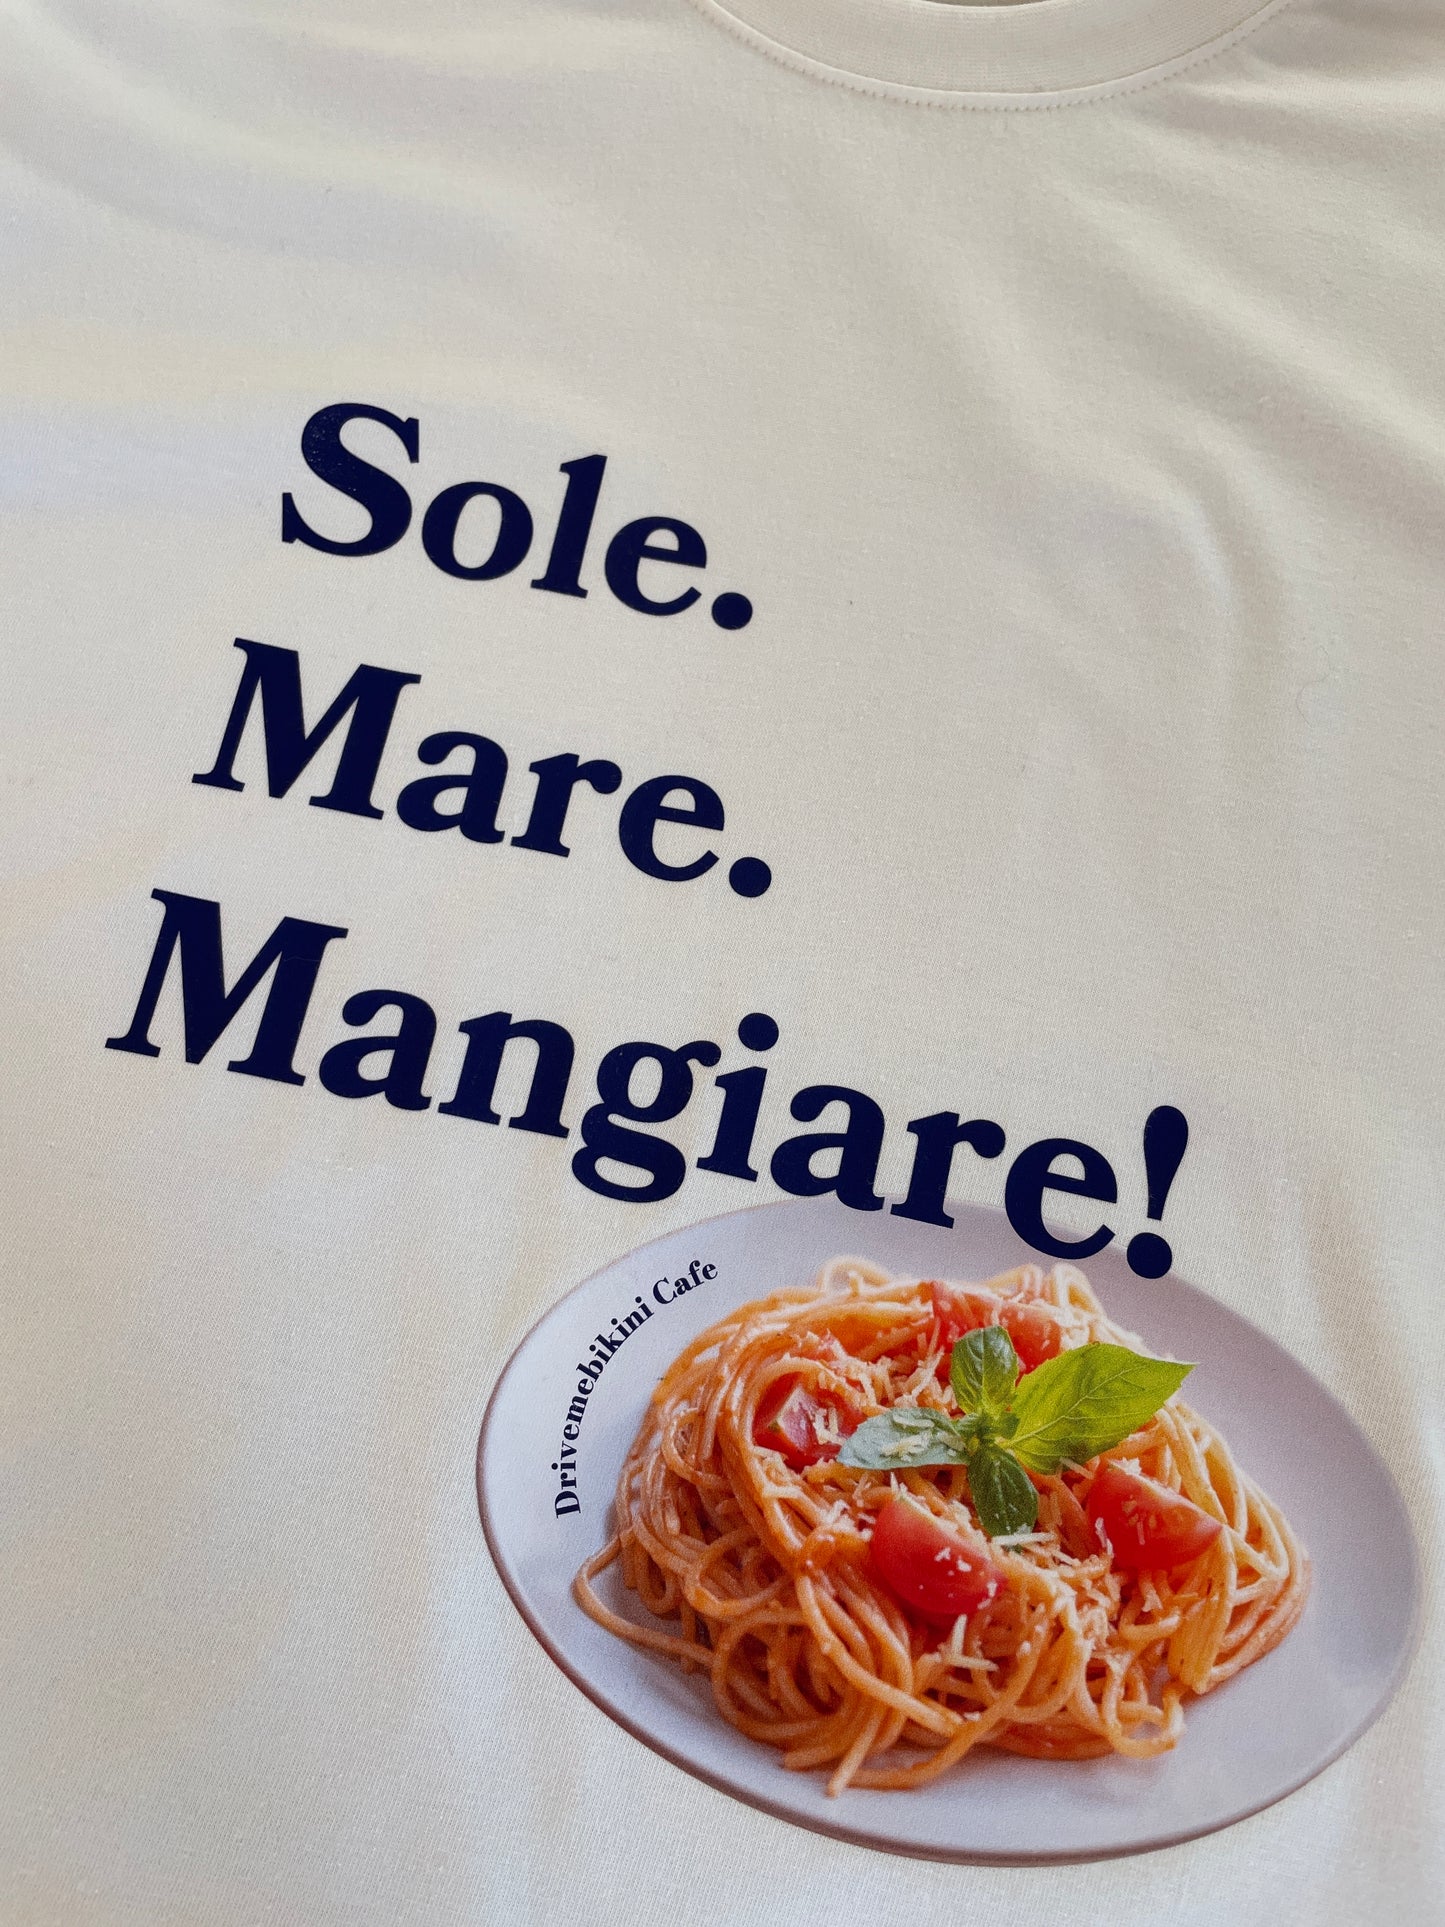 Sole Mare Mangiare. Dla wszystkich foodielovers. Spaghetti bolognese z Drivemebikini cafe. Spaghetti e felicita = la dolce vita. Pasta amore. Pizza and pasta love. 